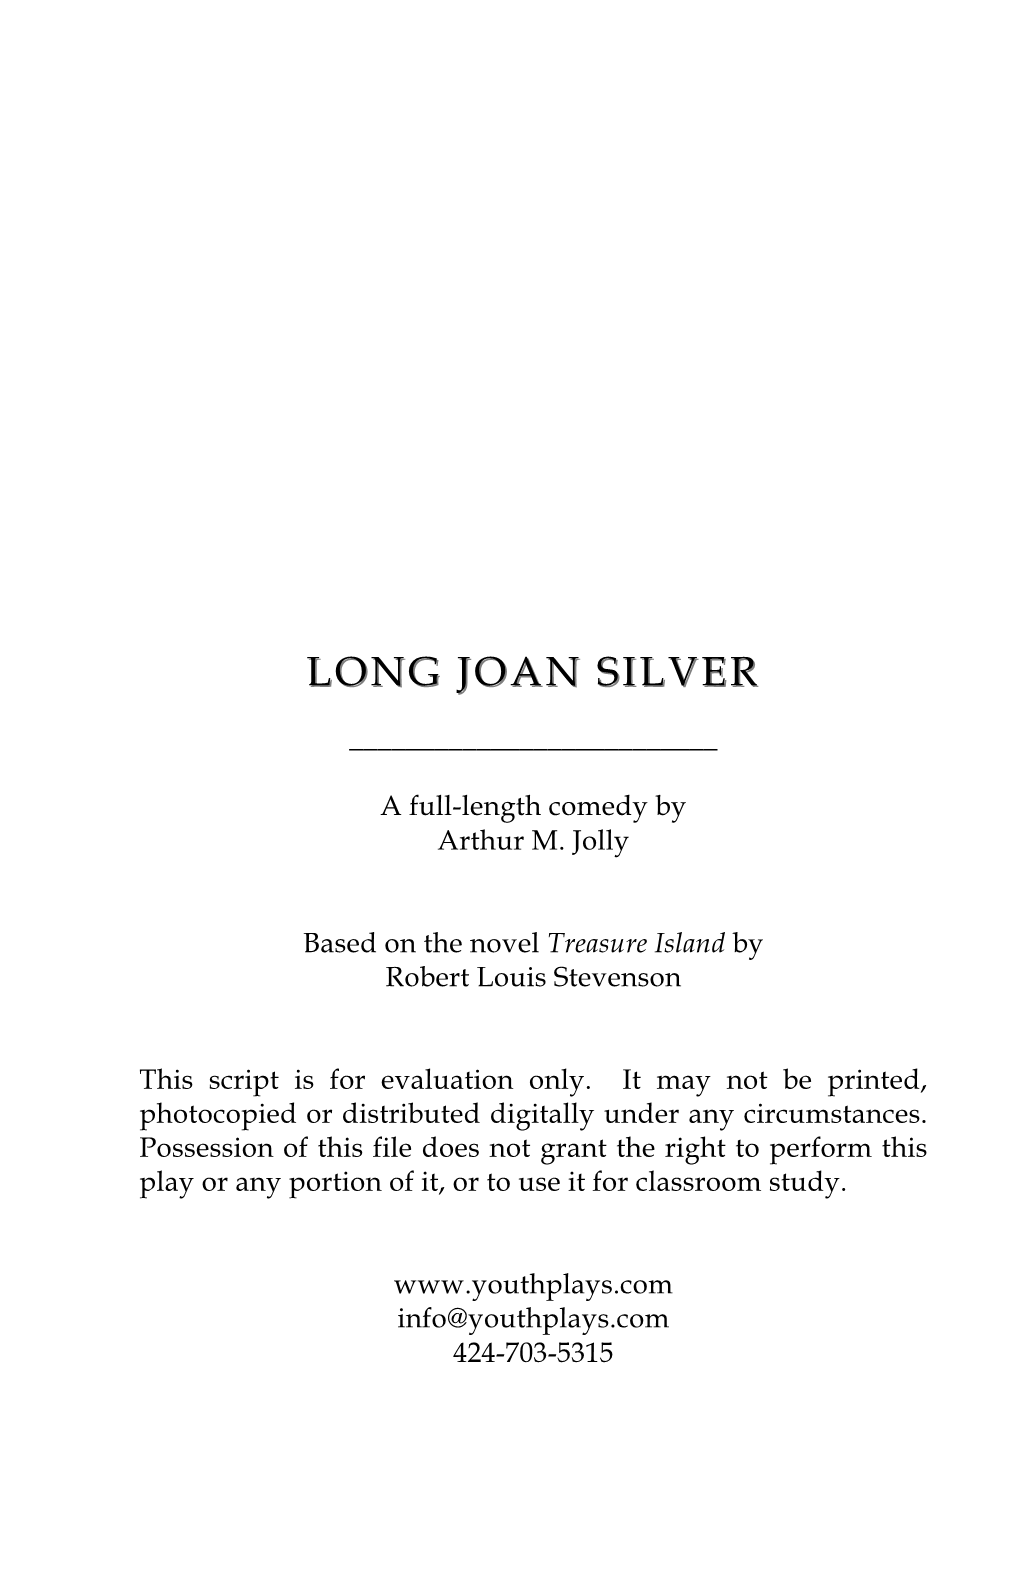 Long Joan Silver Long Joan Silver